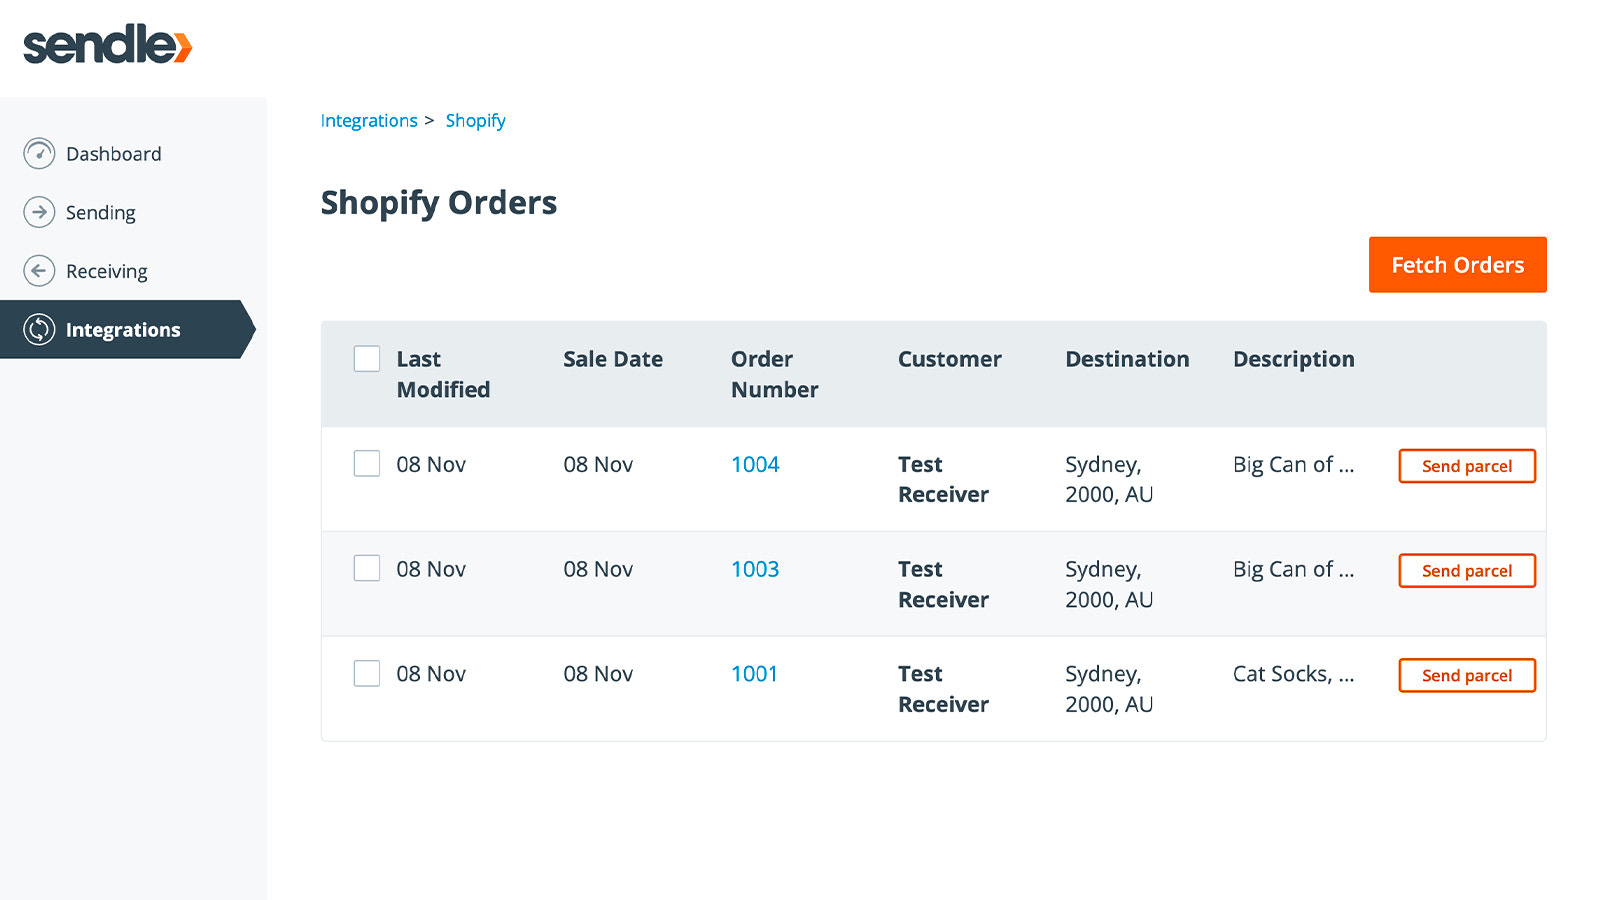 Captura de tela mostrando a página de integração do Shopify no Sendle.